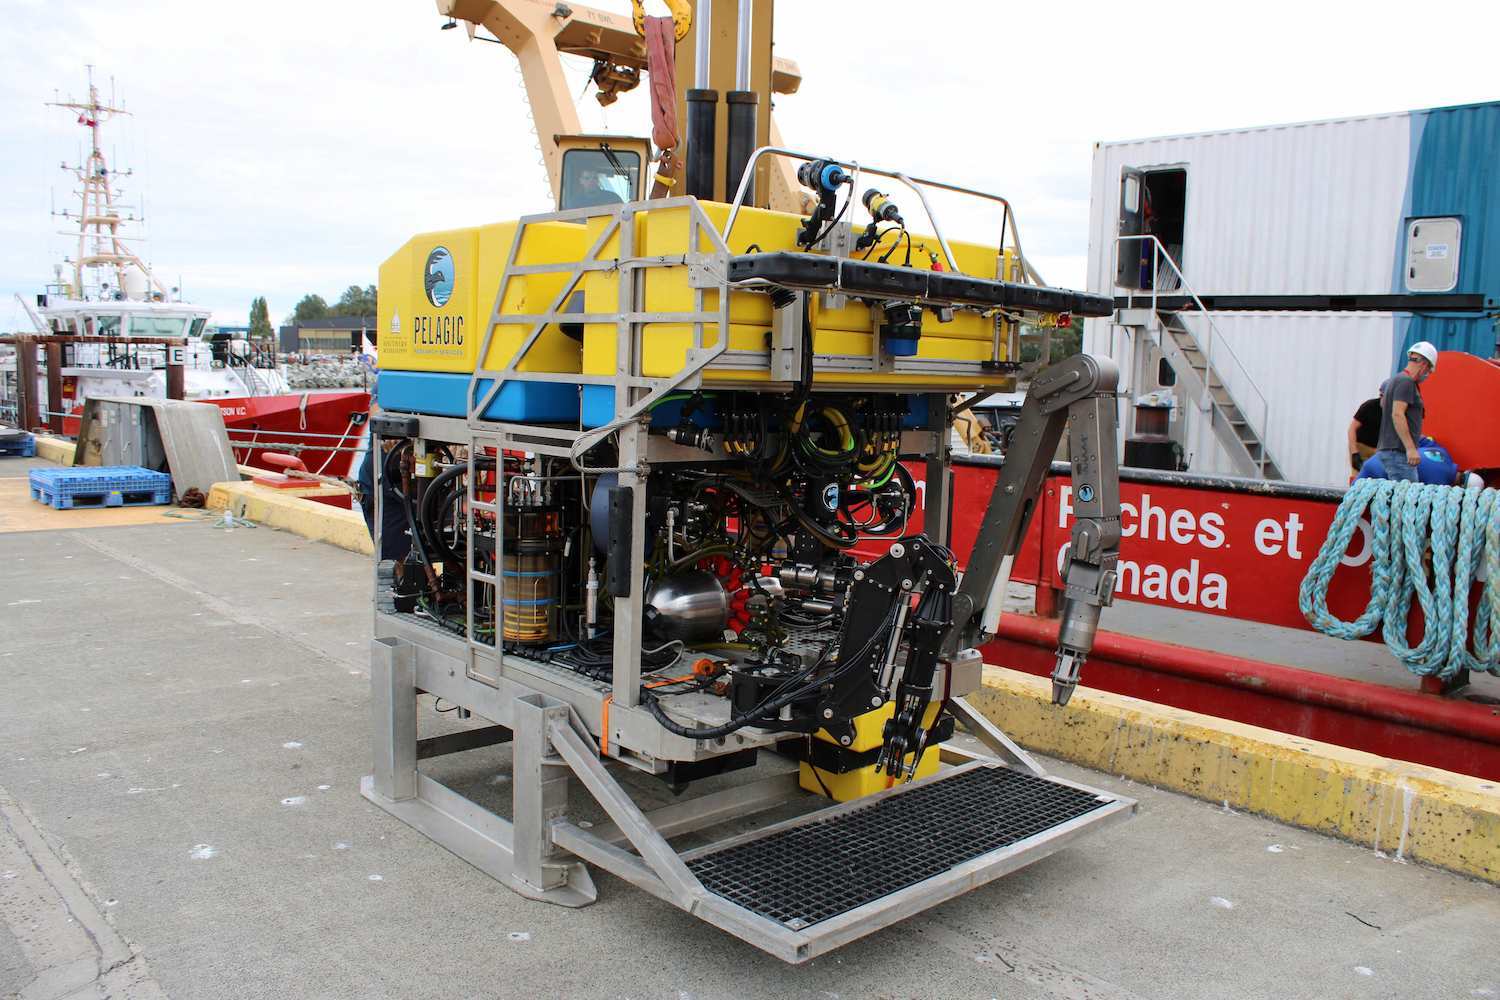 Sea robot equipped with Nortek instruments